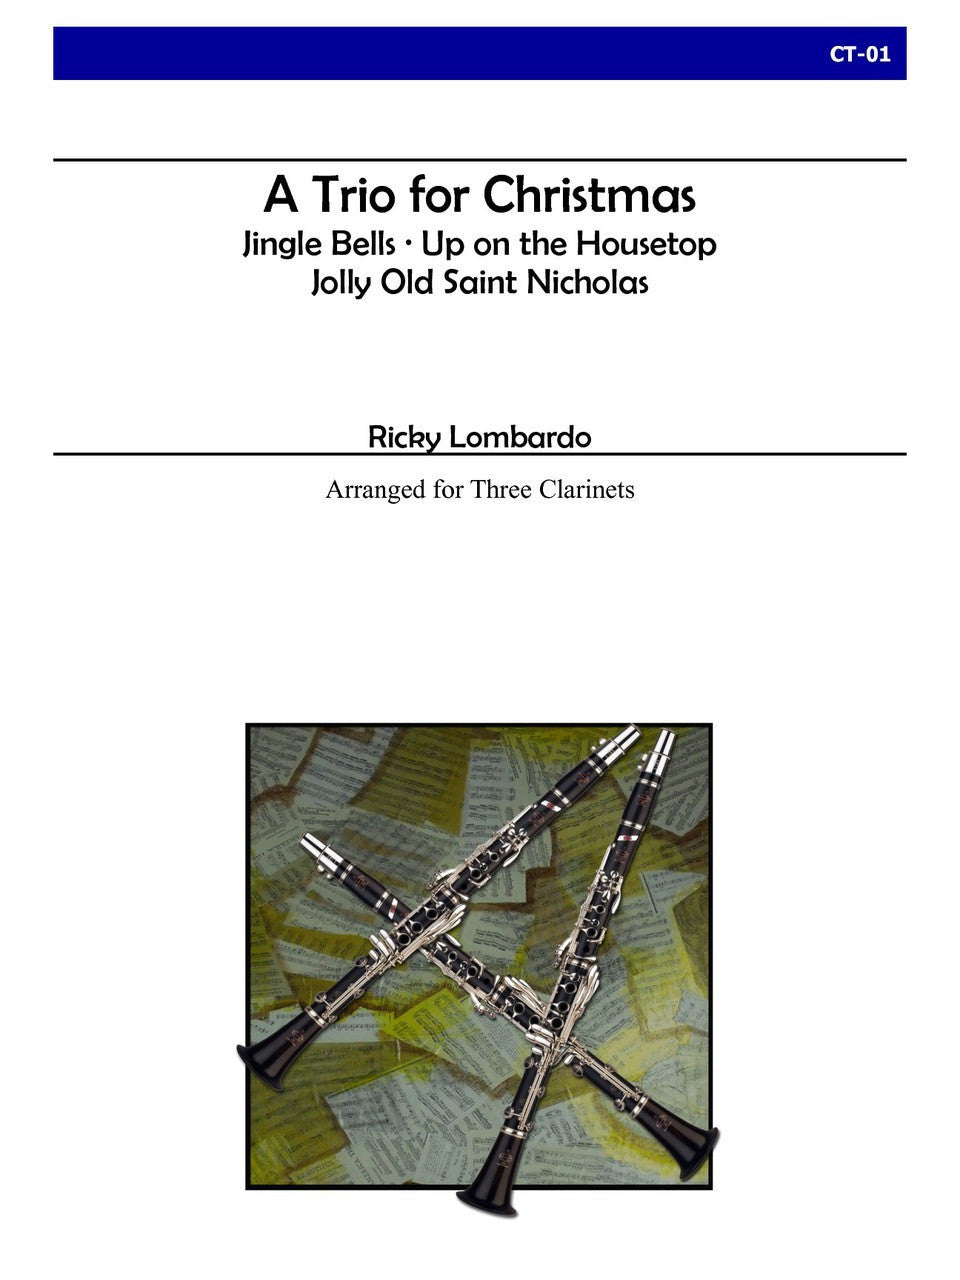 Lombardo - A Trio for Christmas